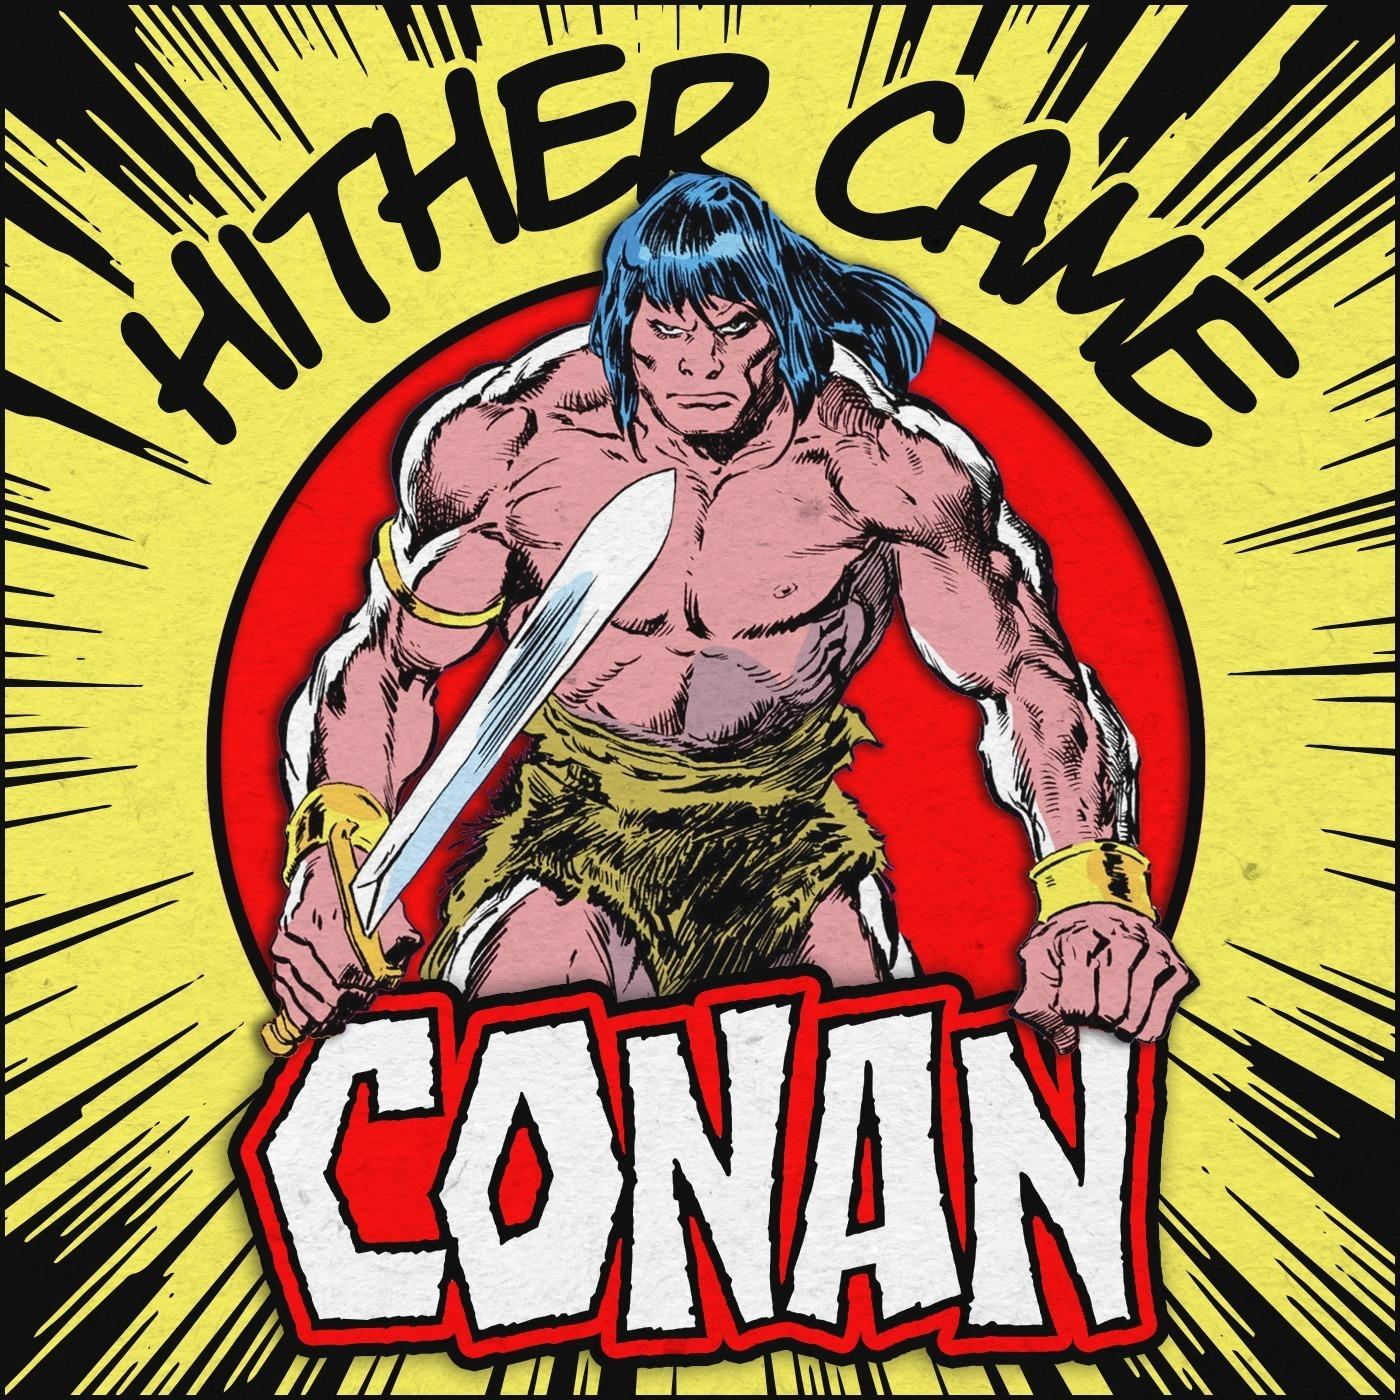 Hither Came Conan